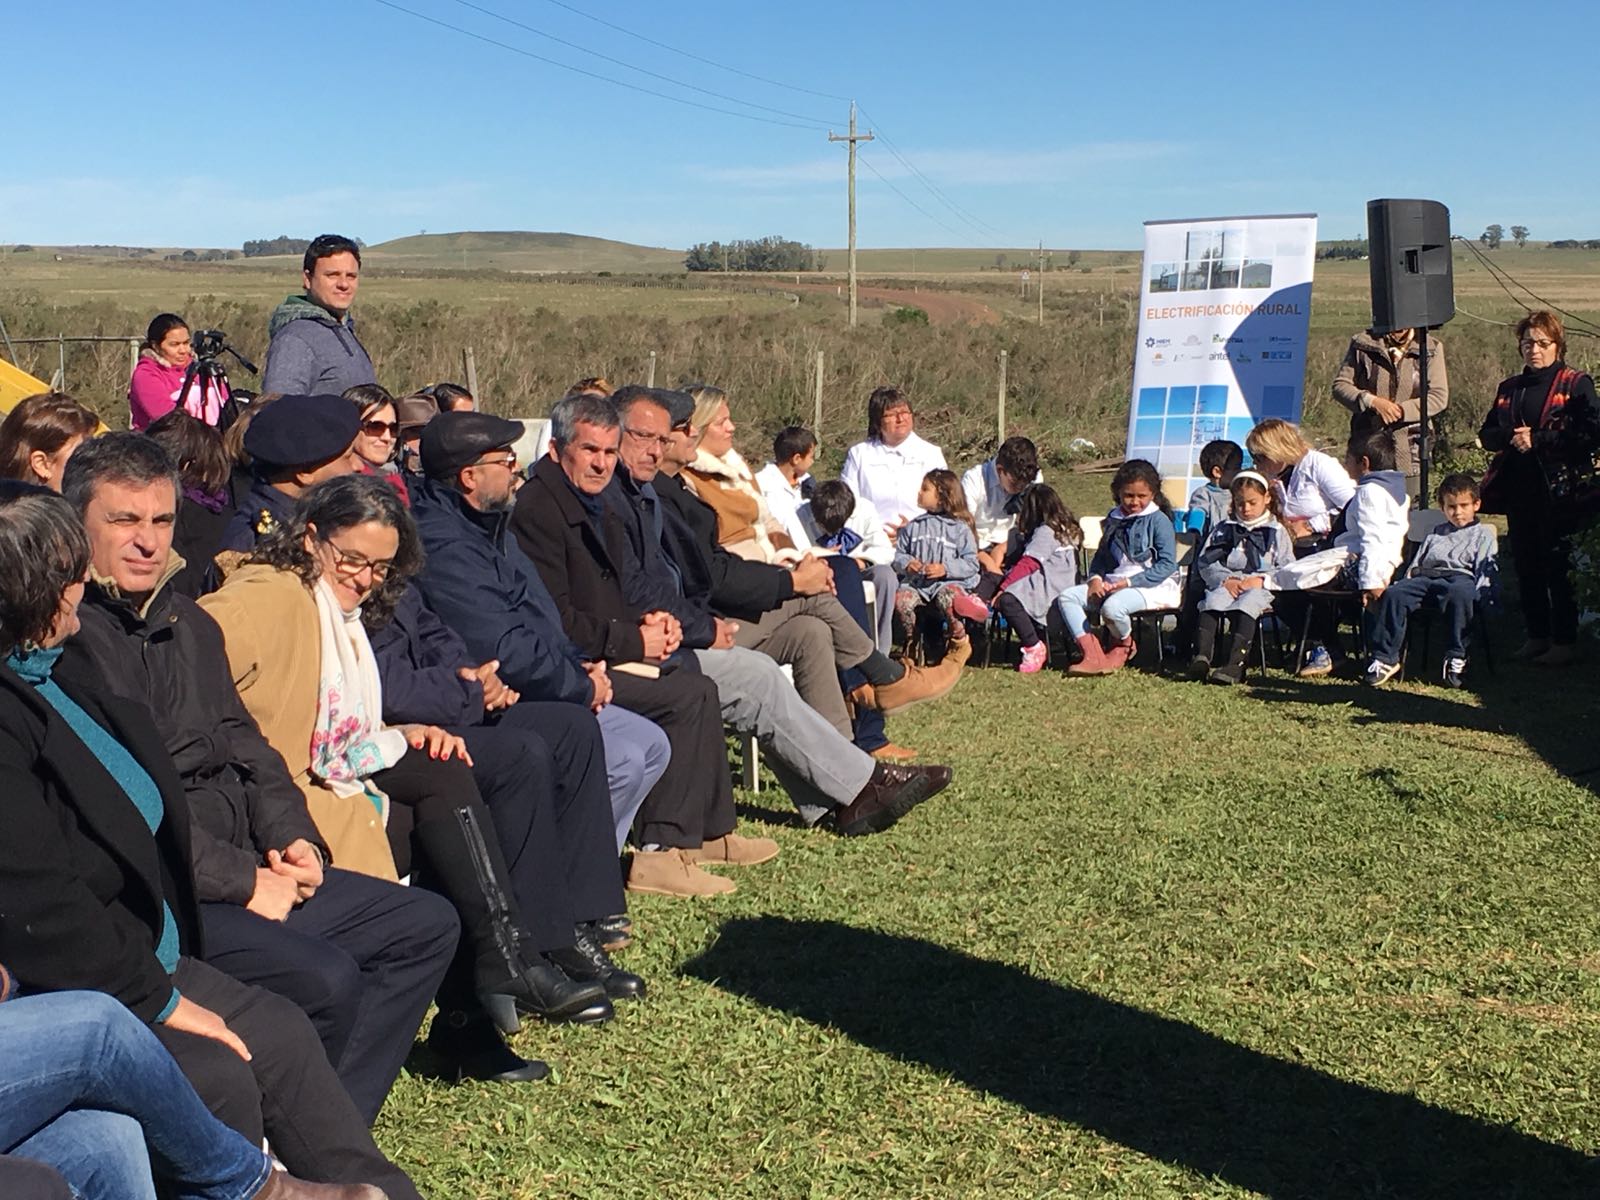 Inauguración electrificación rural en Artigas